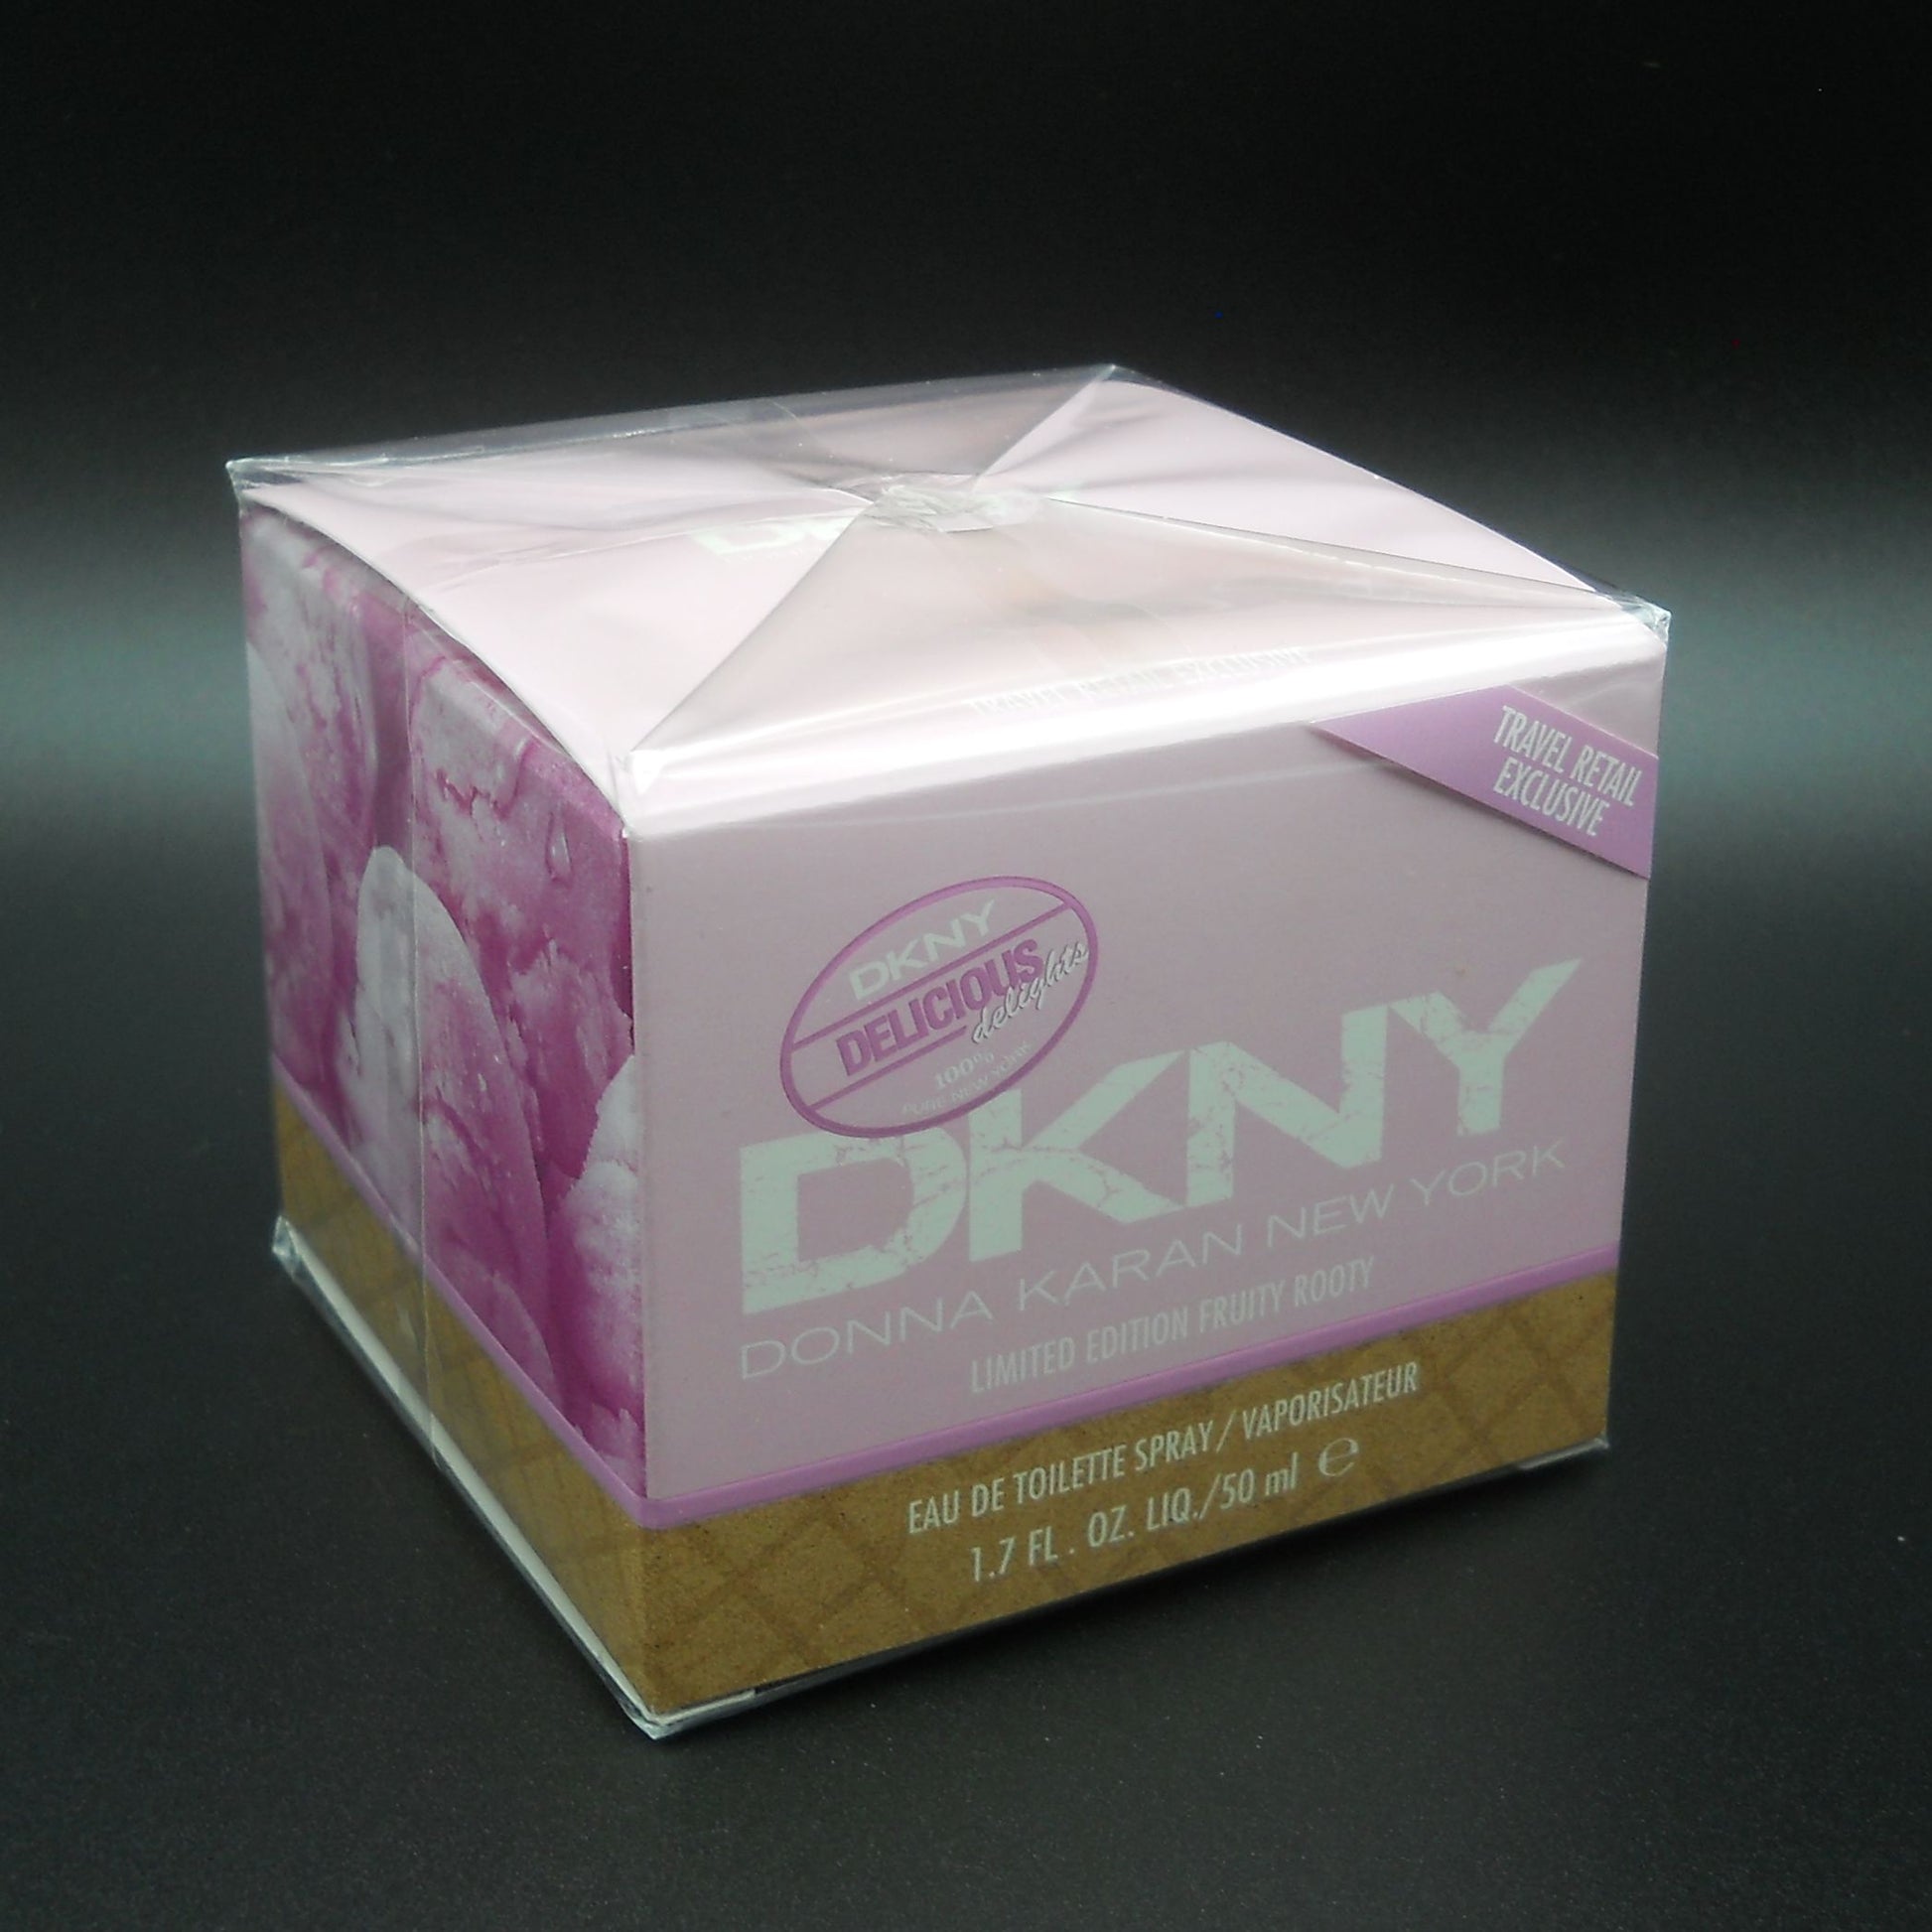 DKNY Donna Karan Delicious Delights Fruity Rooty Eau de Toilette Spray